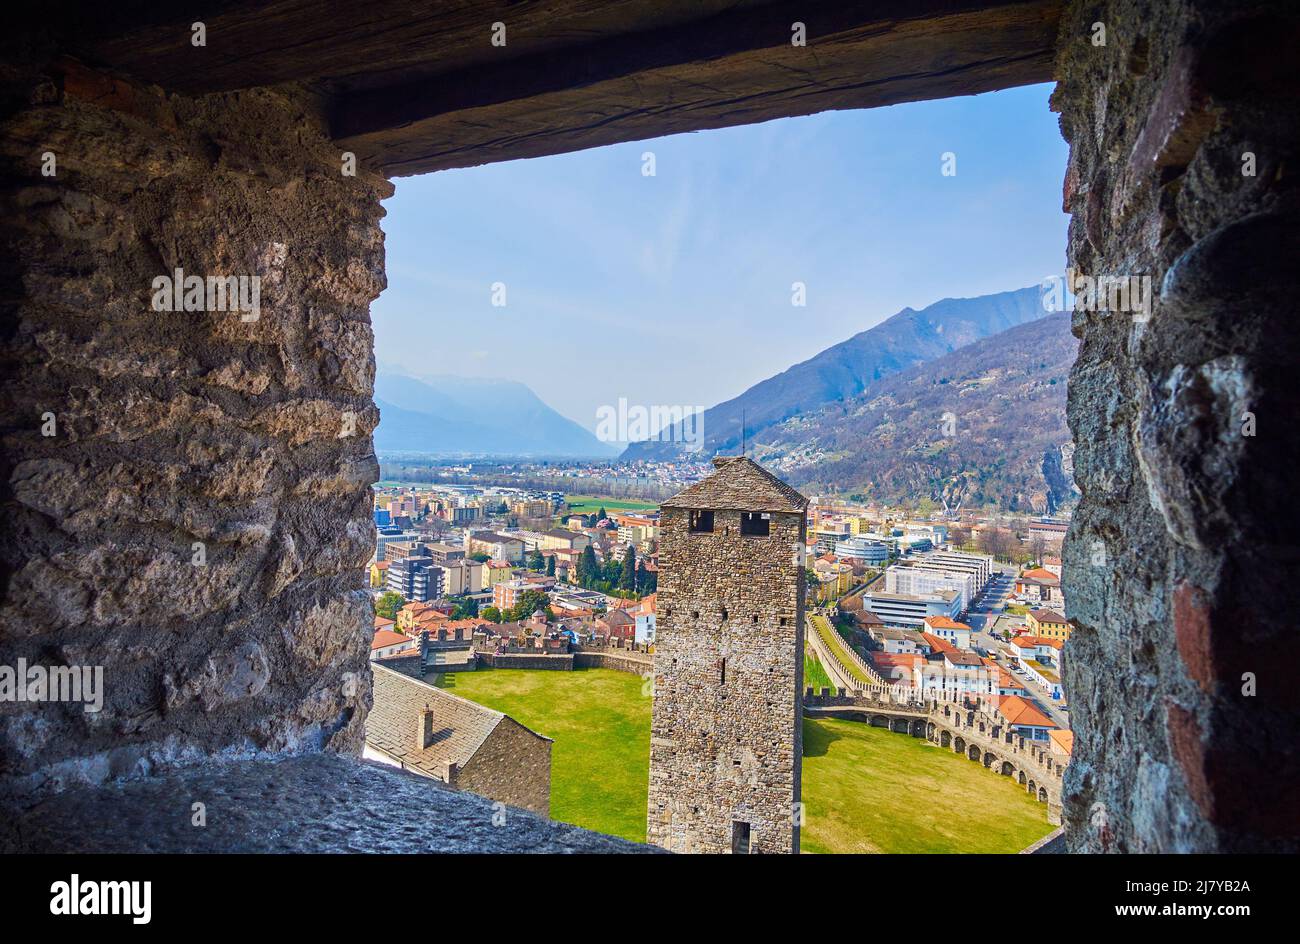 La vue par la petite fenêtre sur la tour médiévale Torre Nera de la forteresse de Castelgrande, Bellinzona, Suisse Banque D'Images